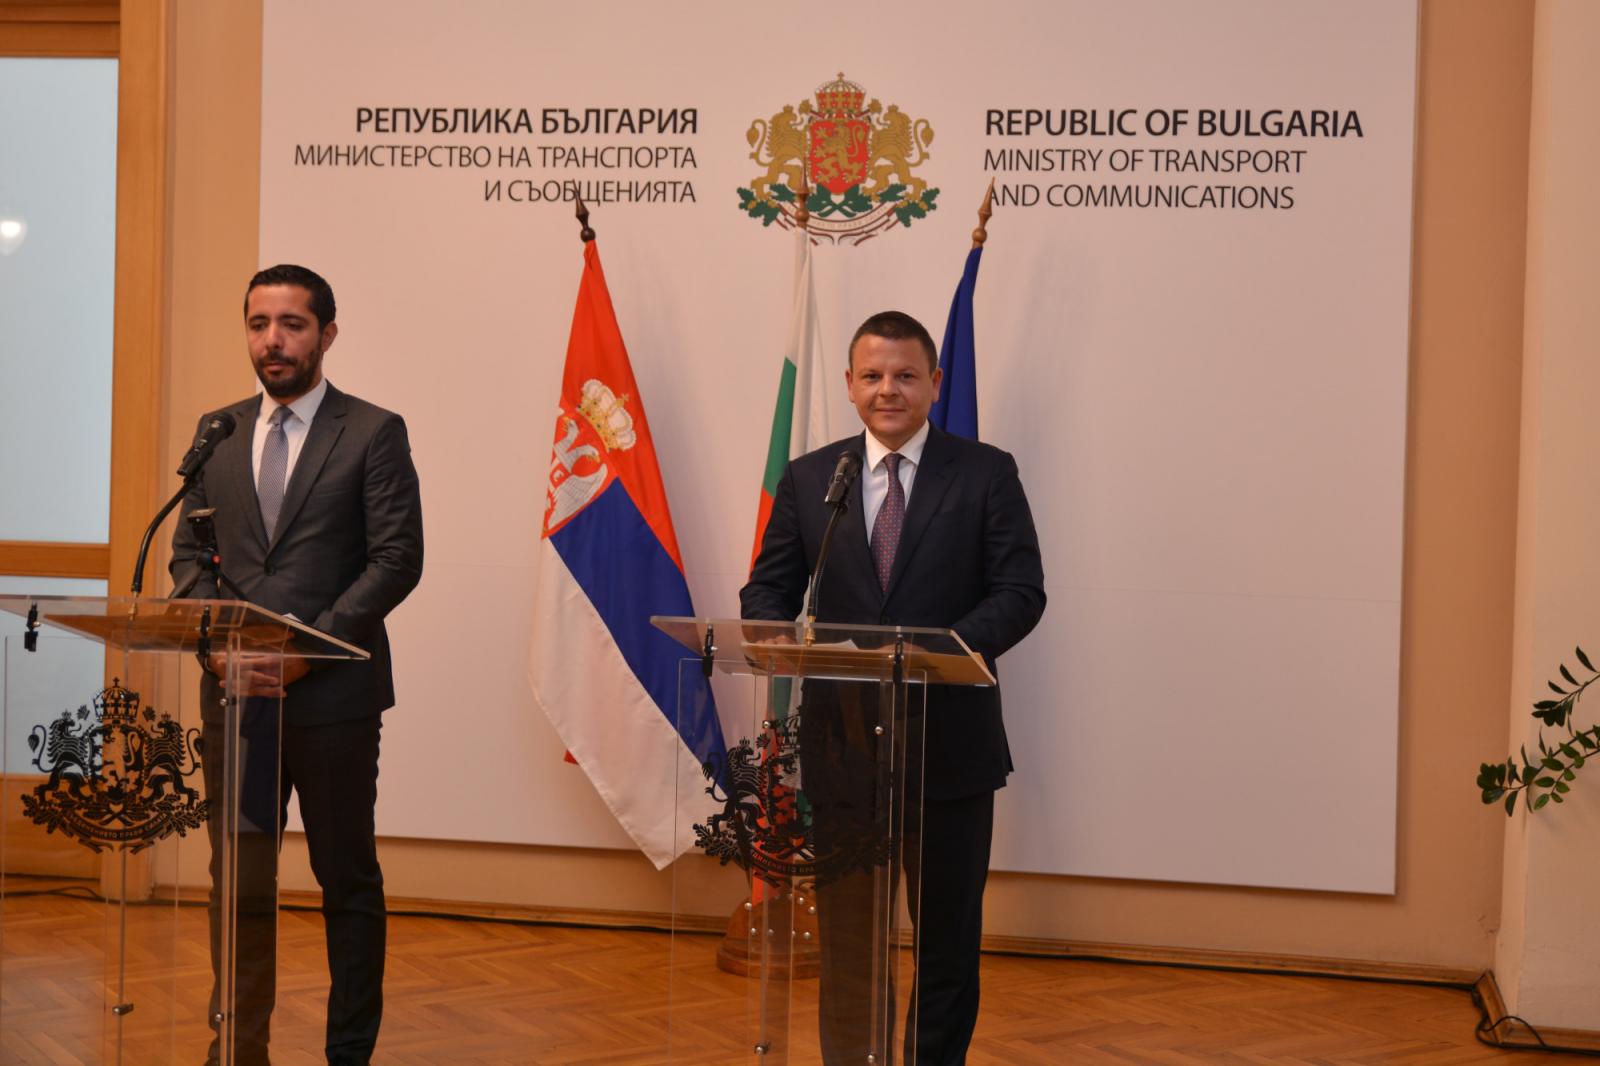 Bulgaristan ve Sırbistan, enerji kaynaklarını garanti altına almak için birlikte çalışacak